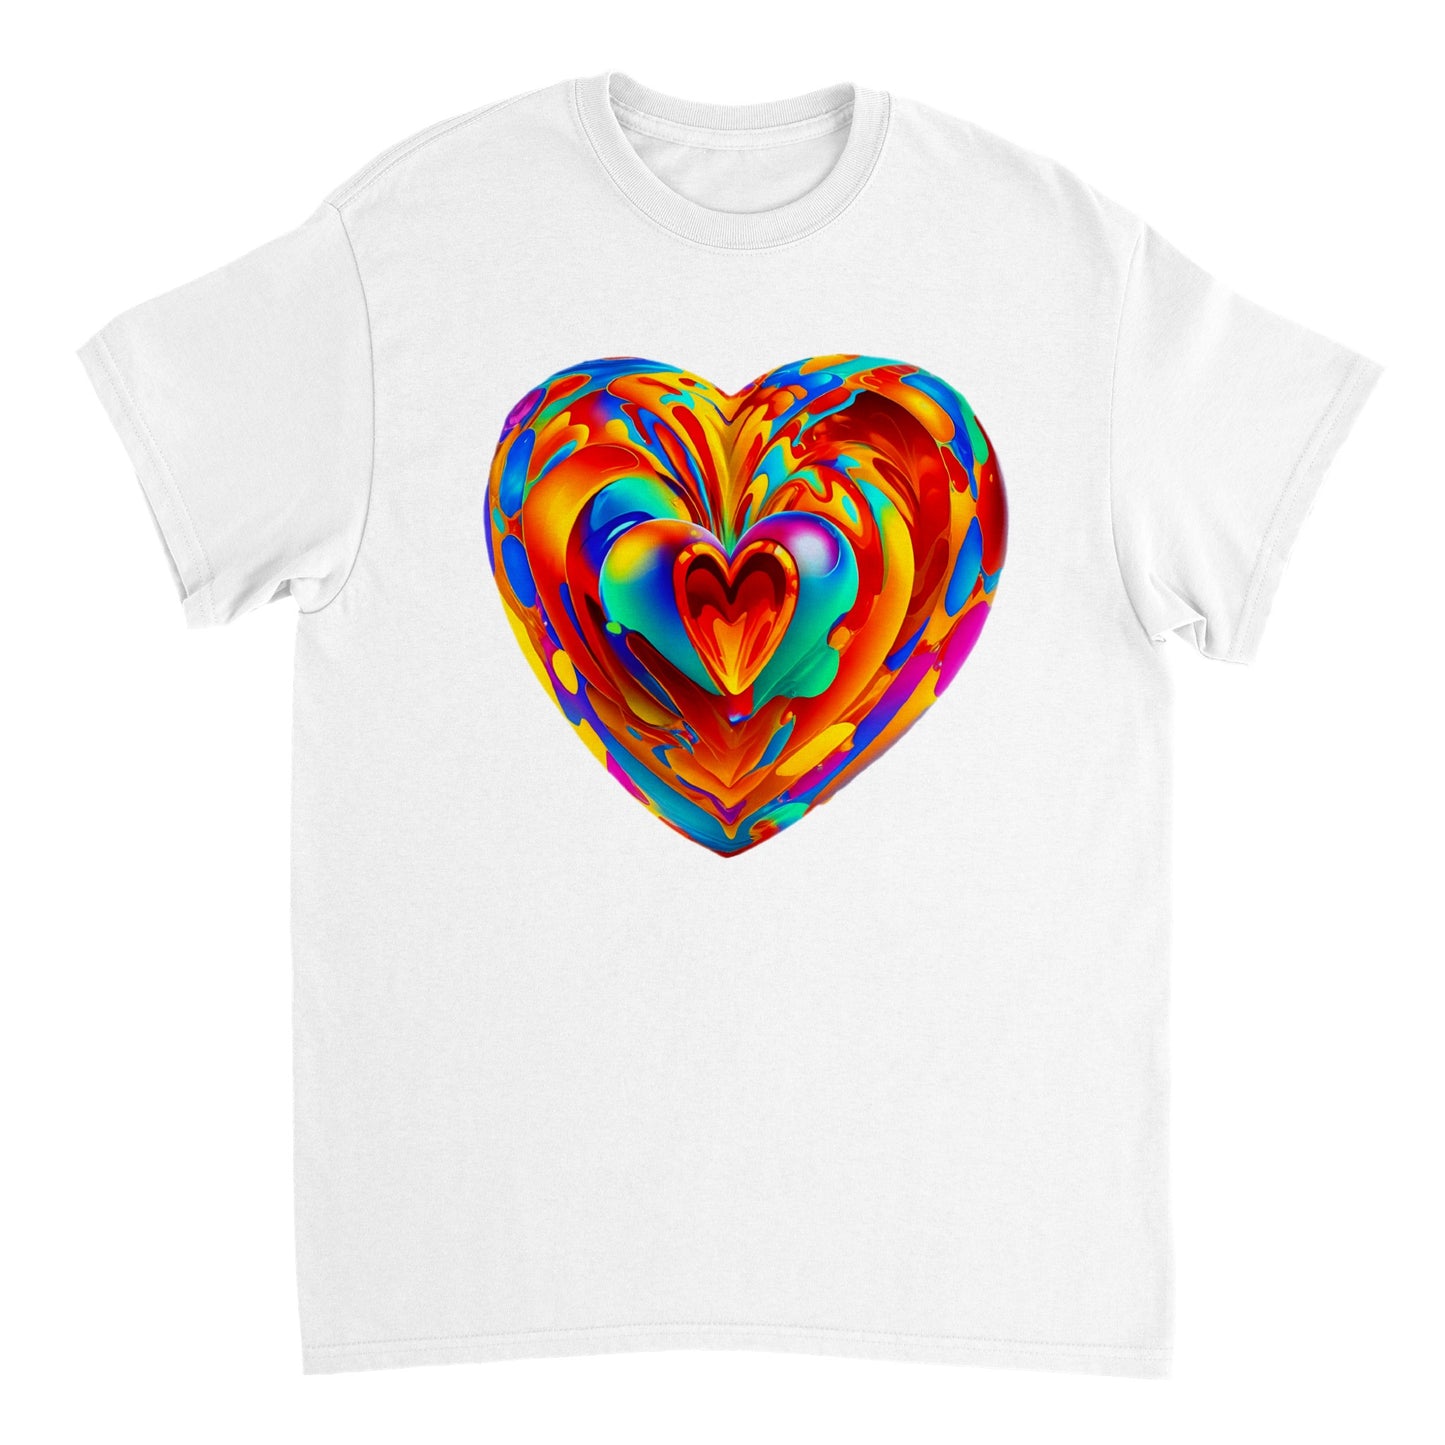 Love Heart - Heavyweight Unisex Crewneck T-shirt 110